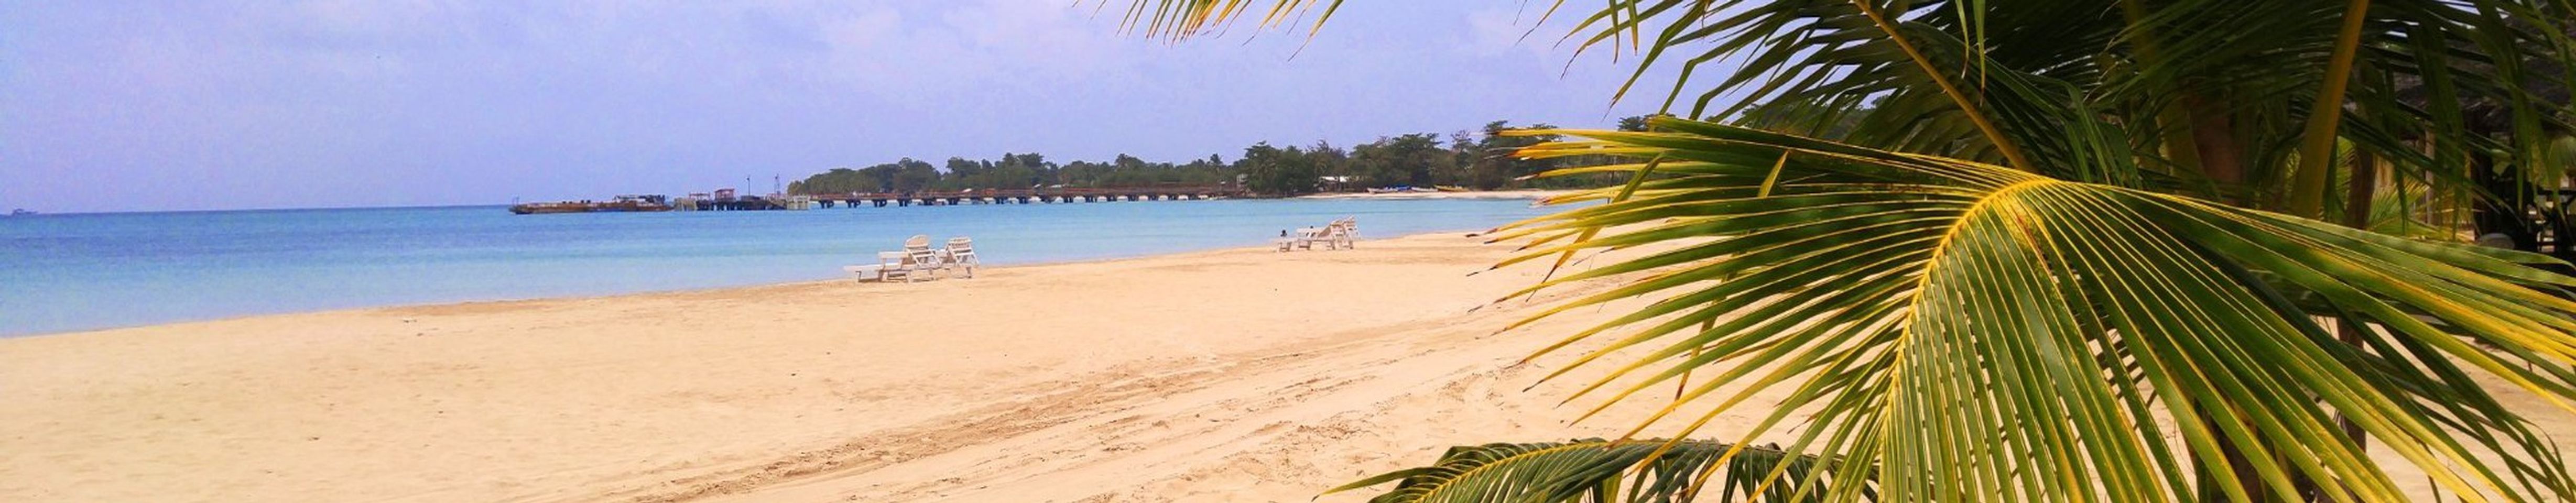 Vista de la playa más hermosa de la isla, localizada frente a los hoteles Arenas y Picknic Cente